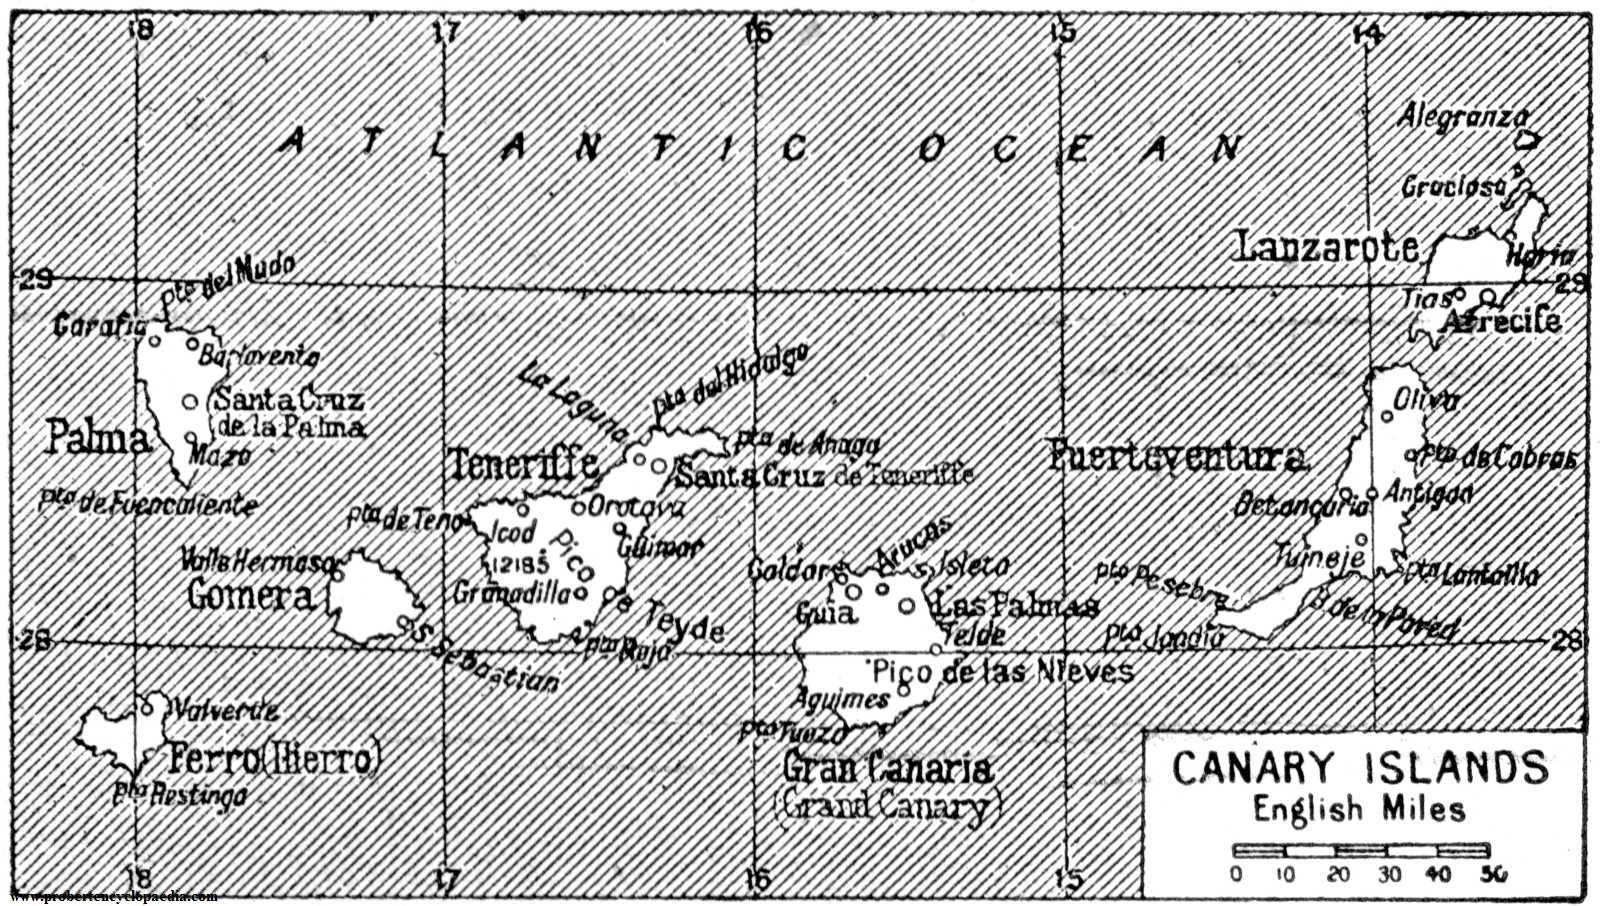 Mapa de las Islas Canarias 1922